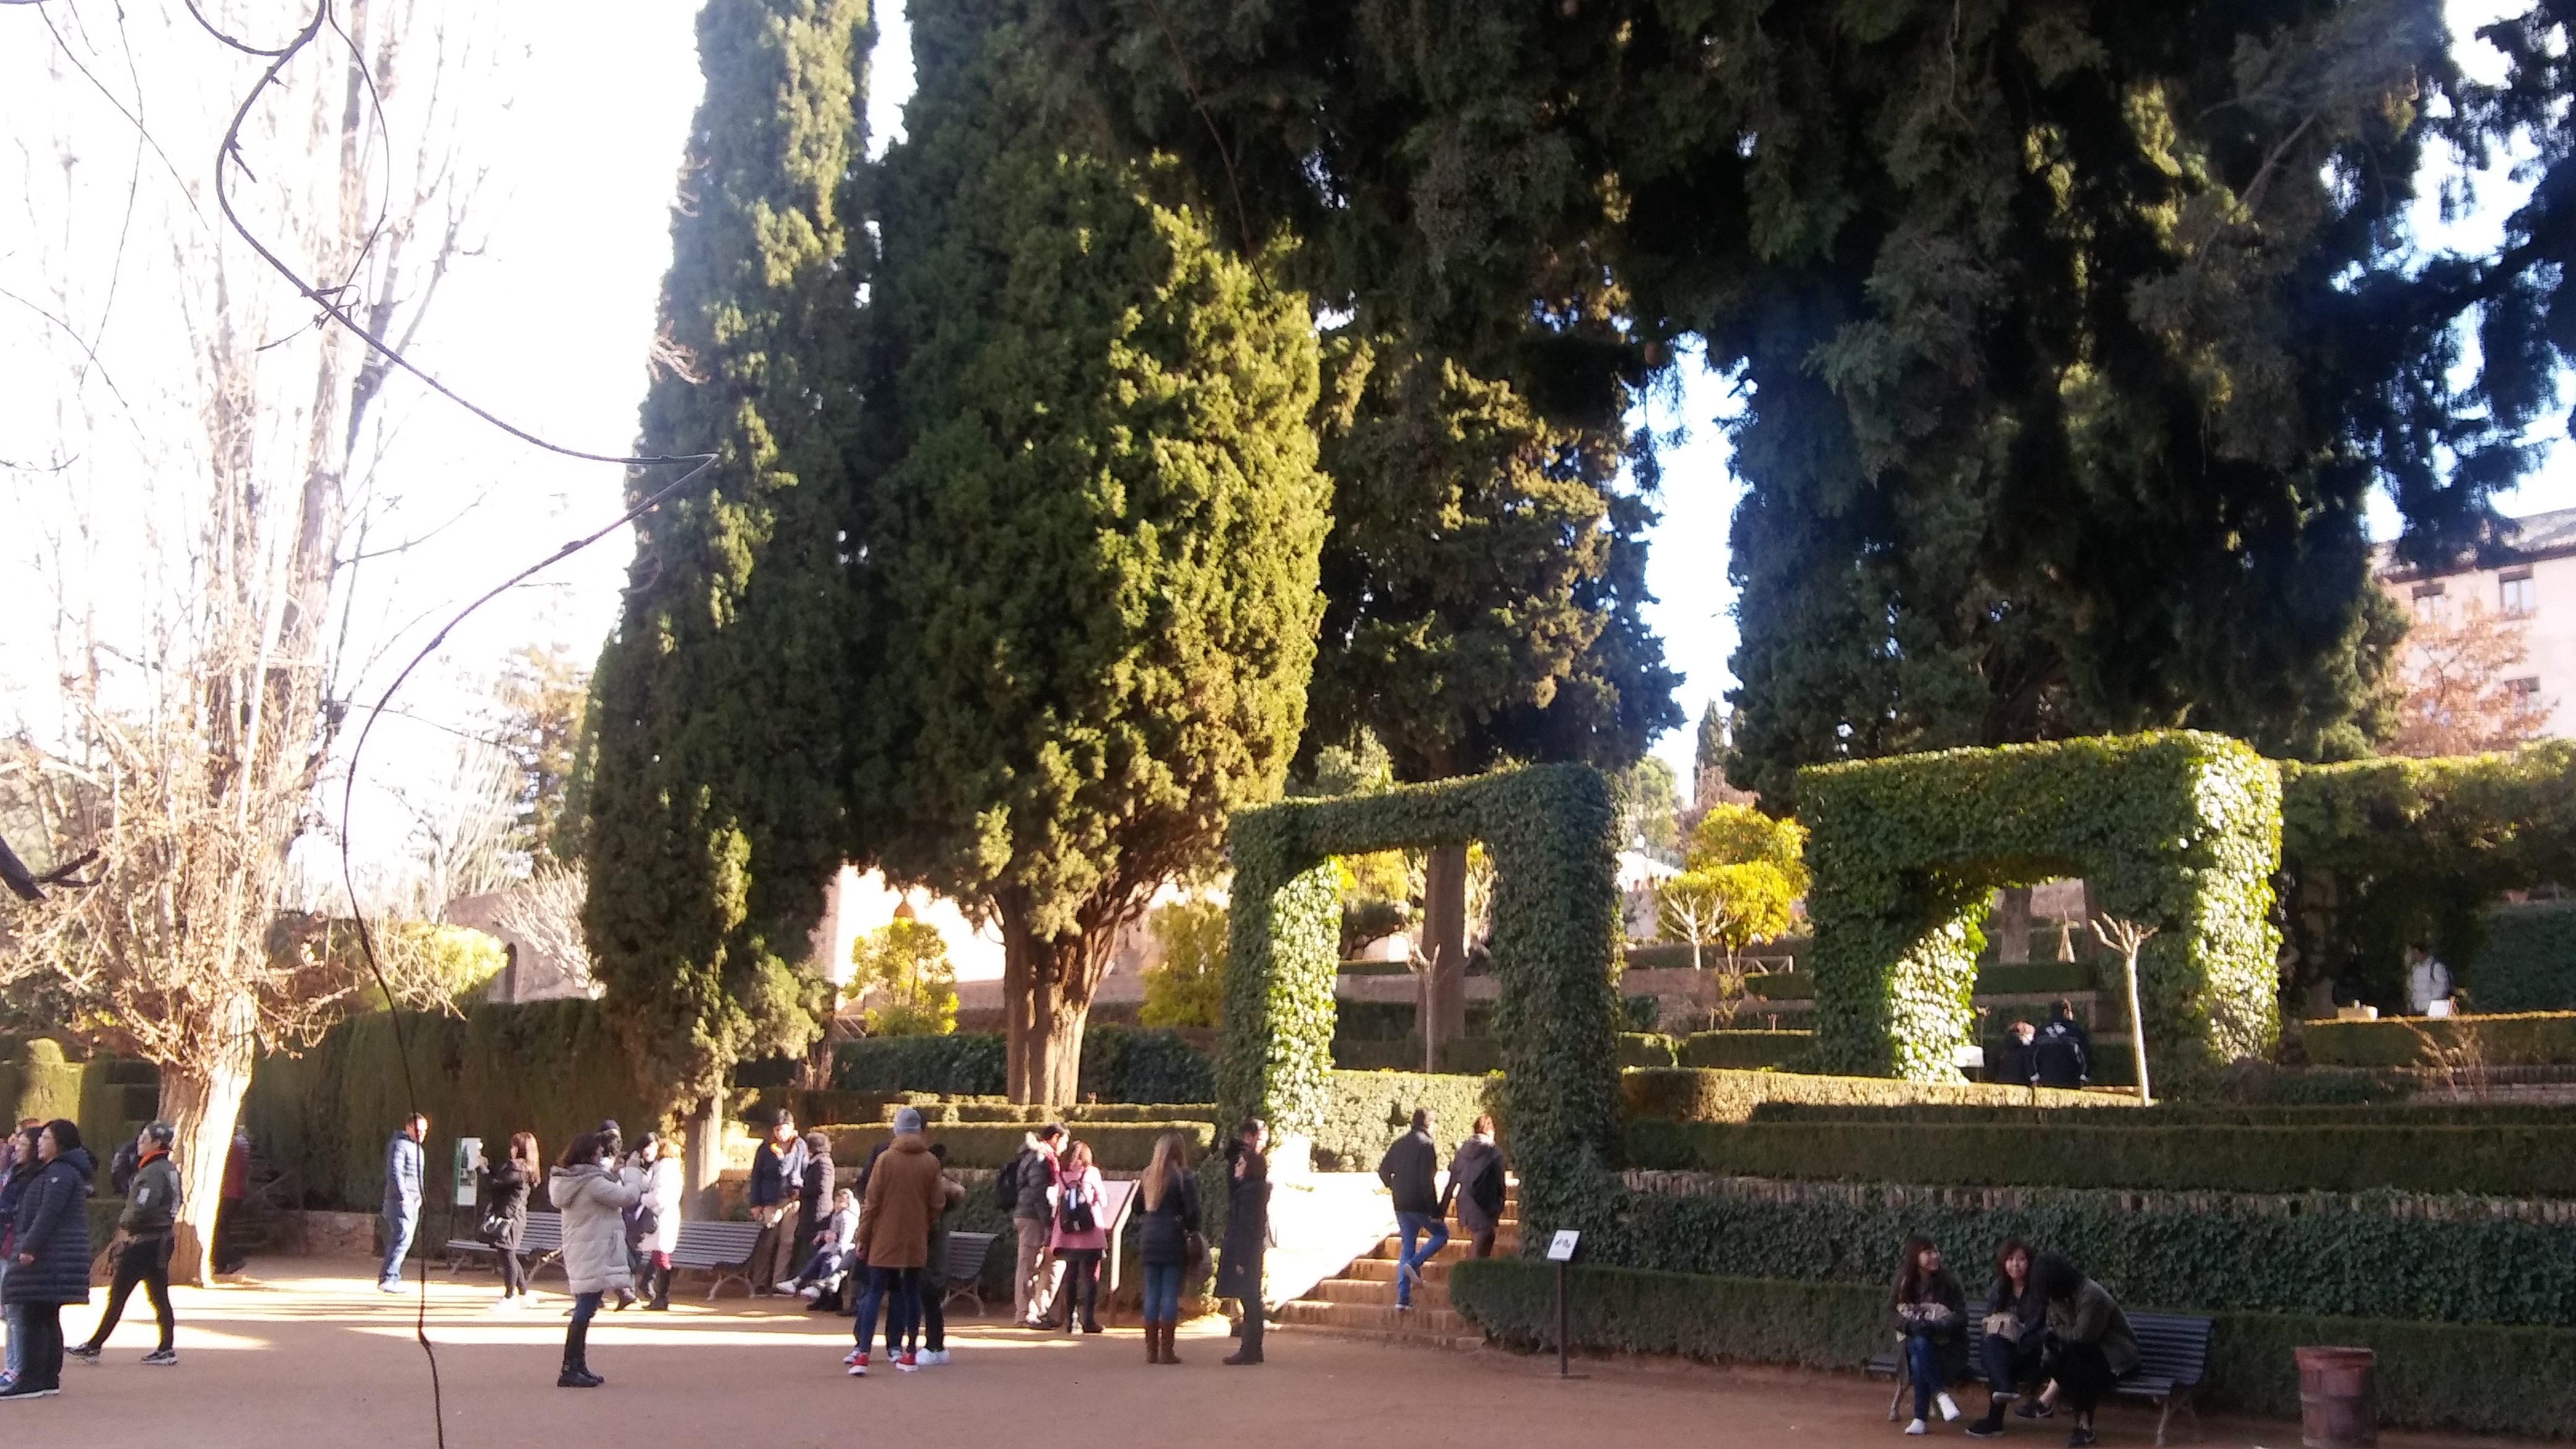 알함브라 궁전(Alhambra)